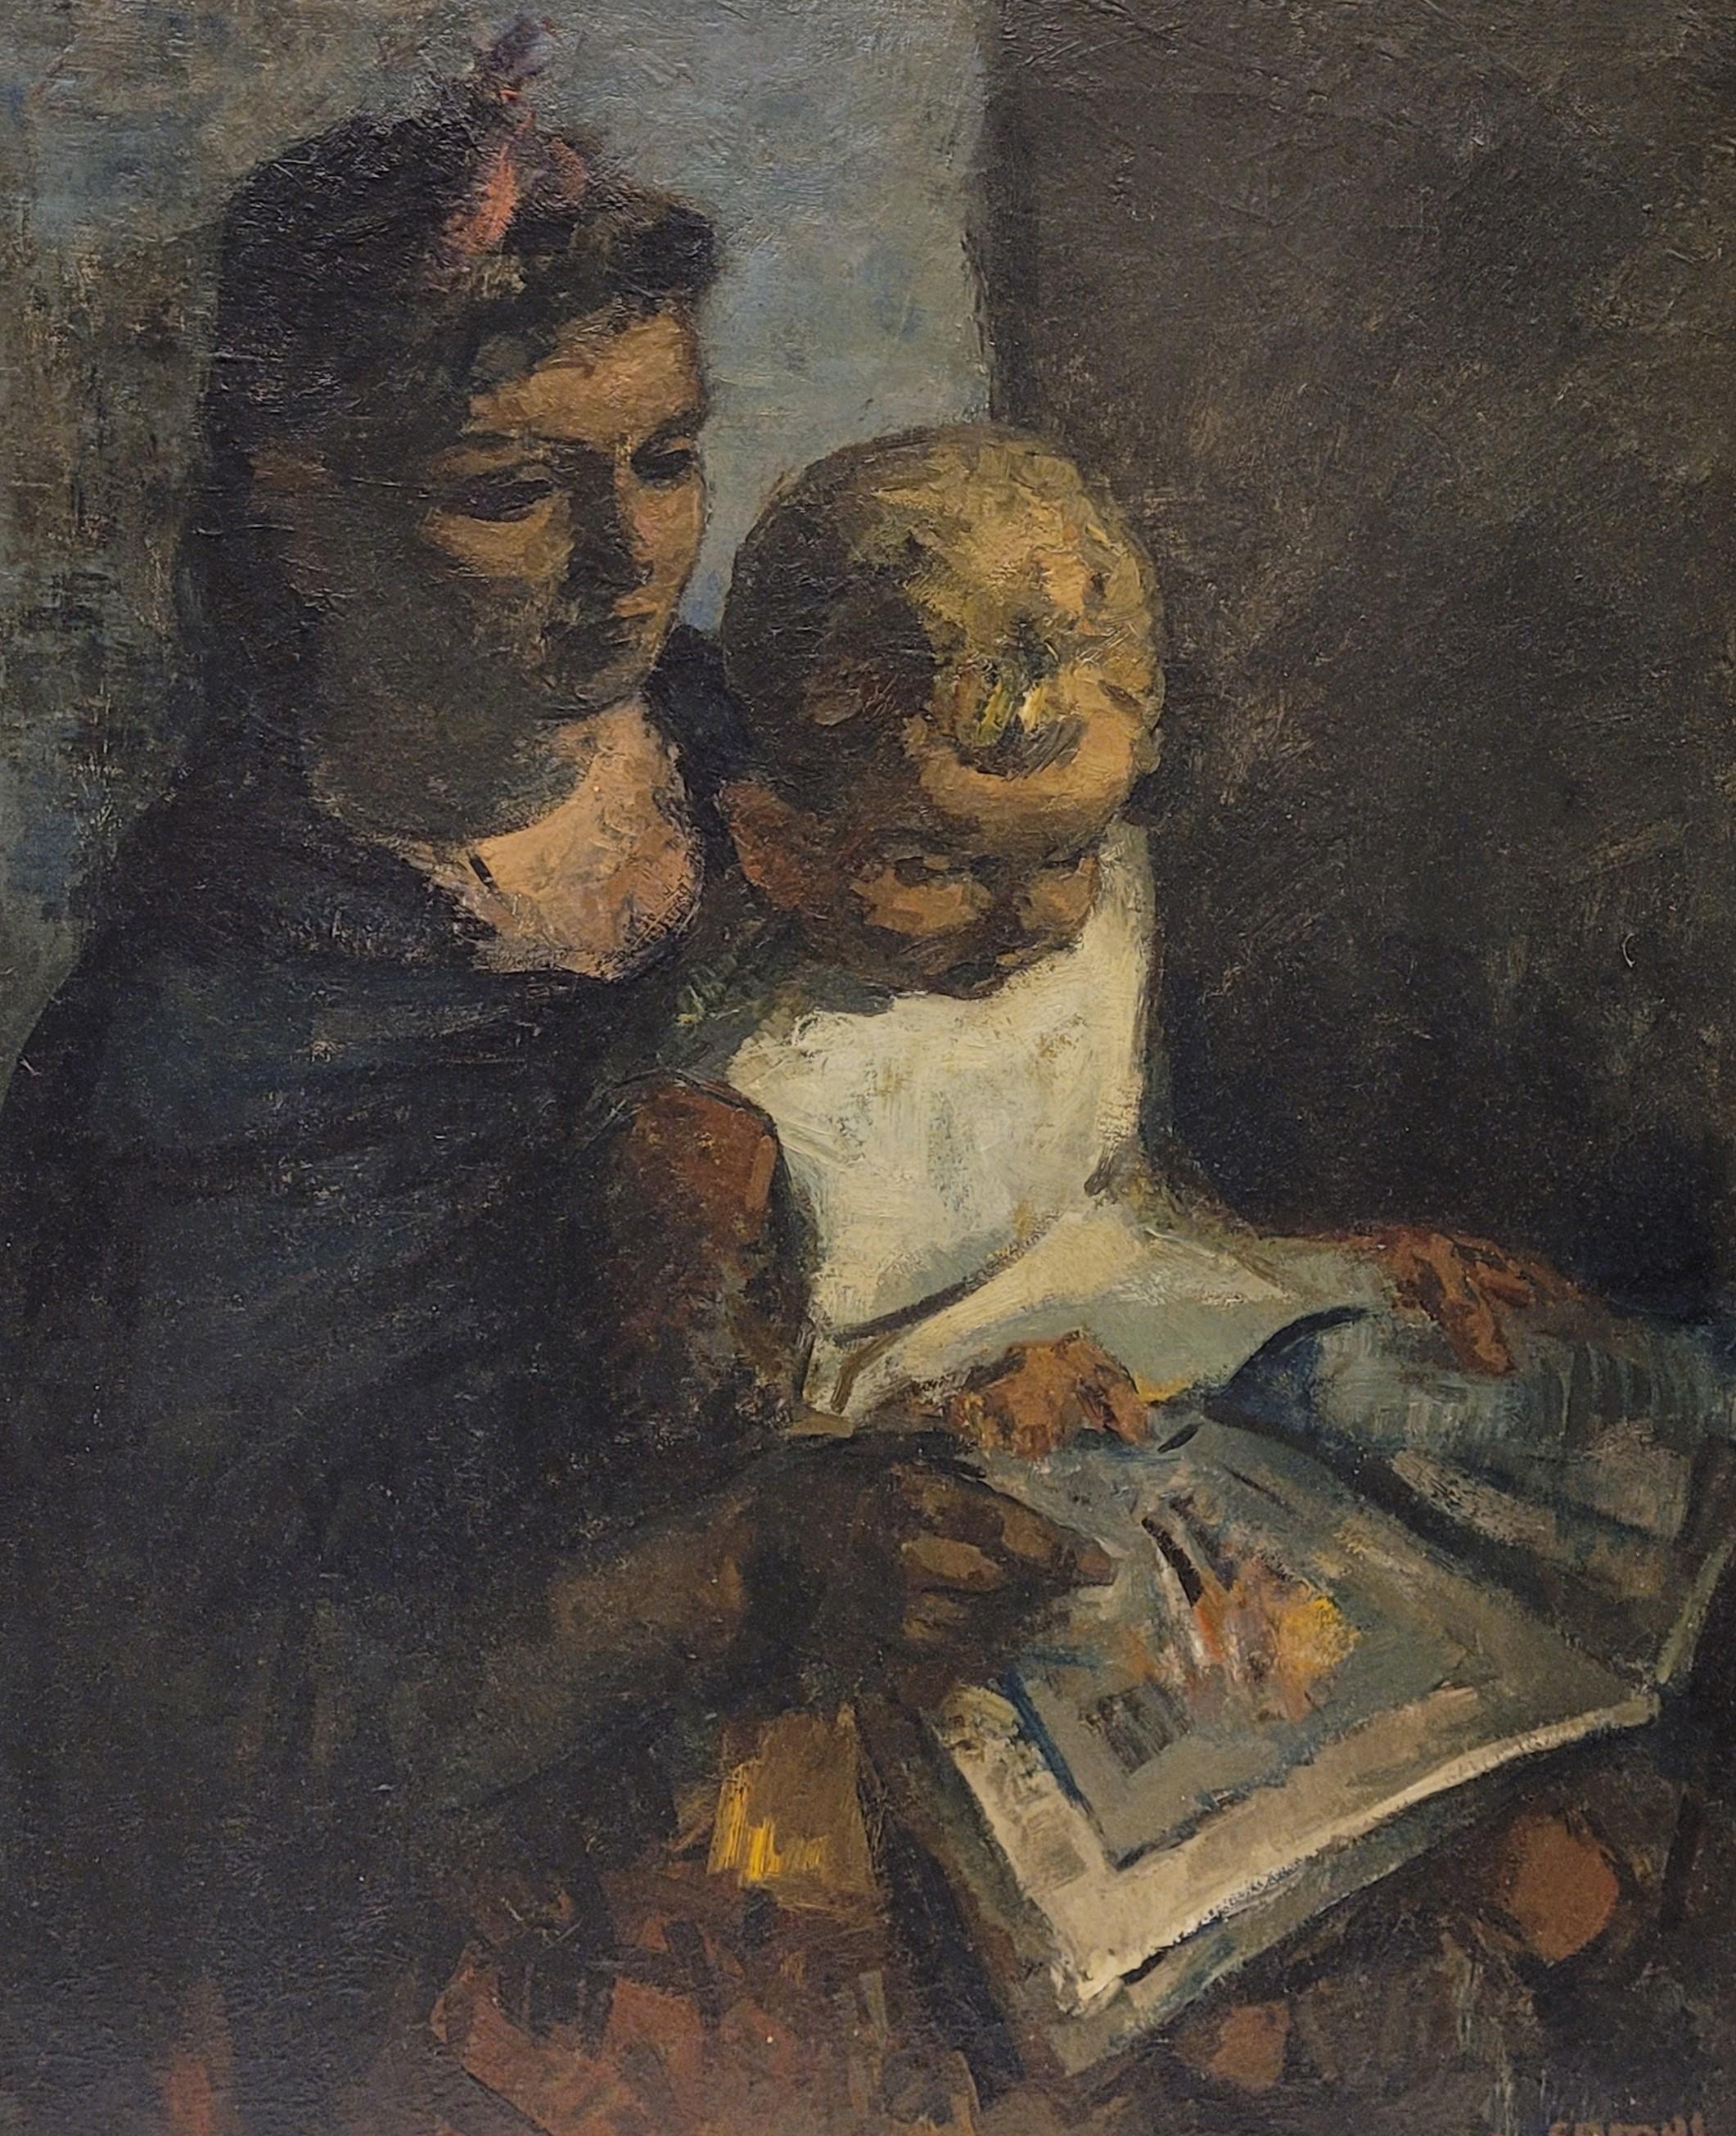 Français Peinture expressionniste belge Enseignant à lire, Gustave Camus, 43 signé